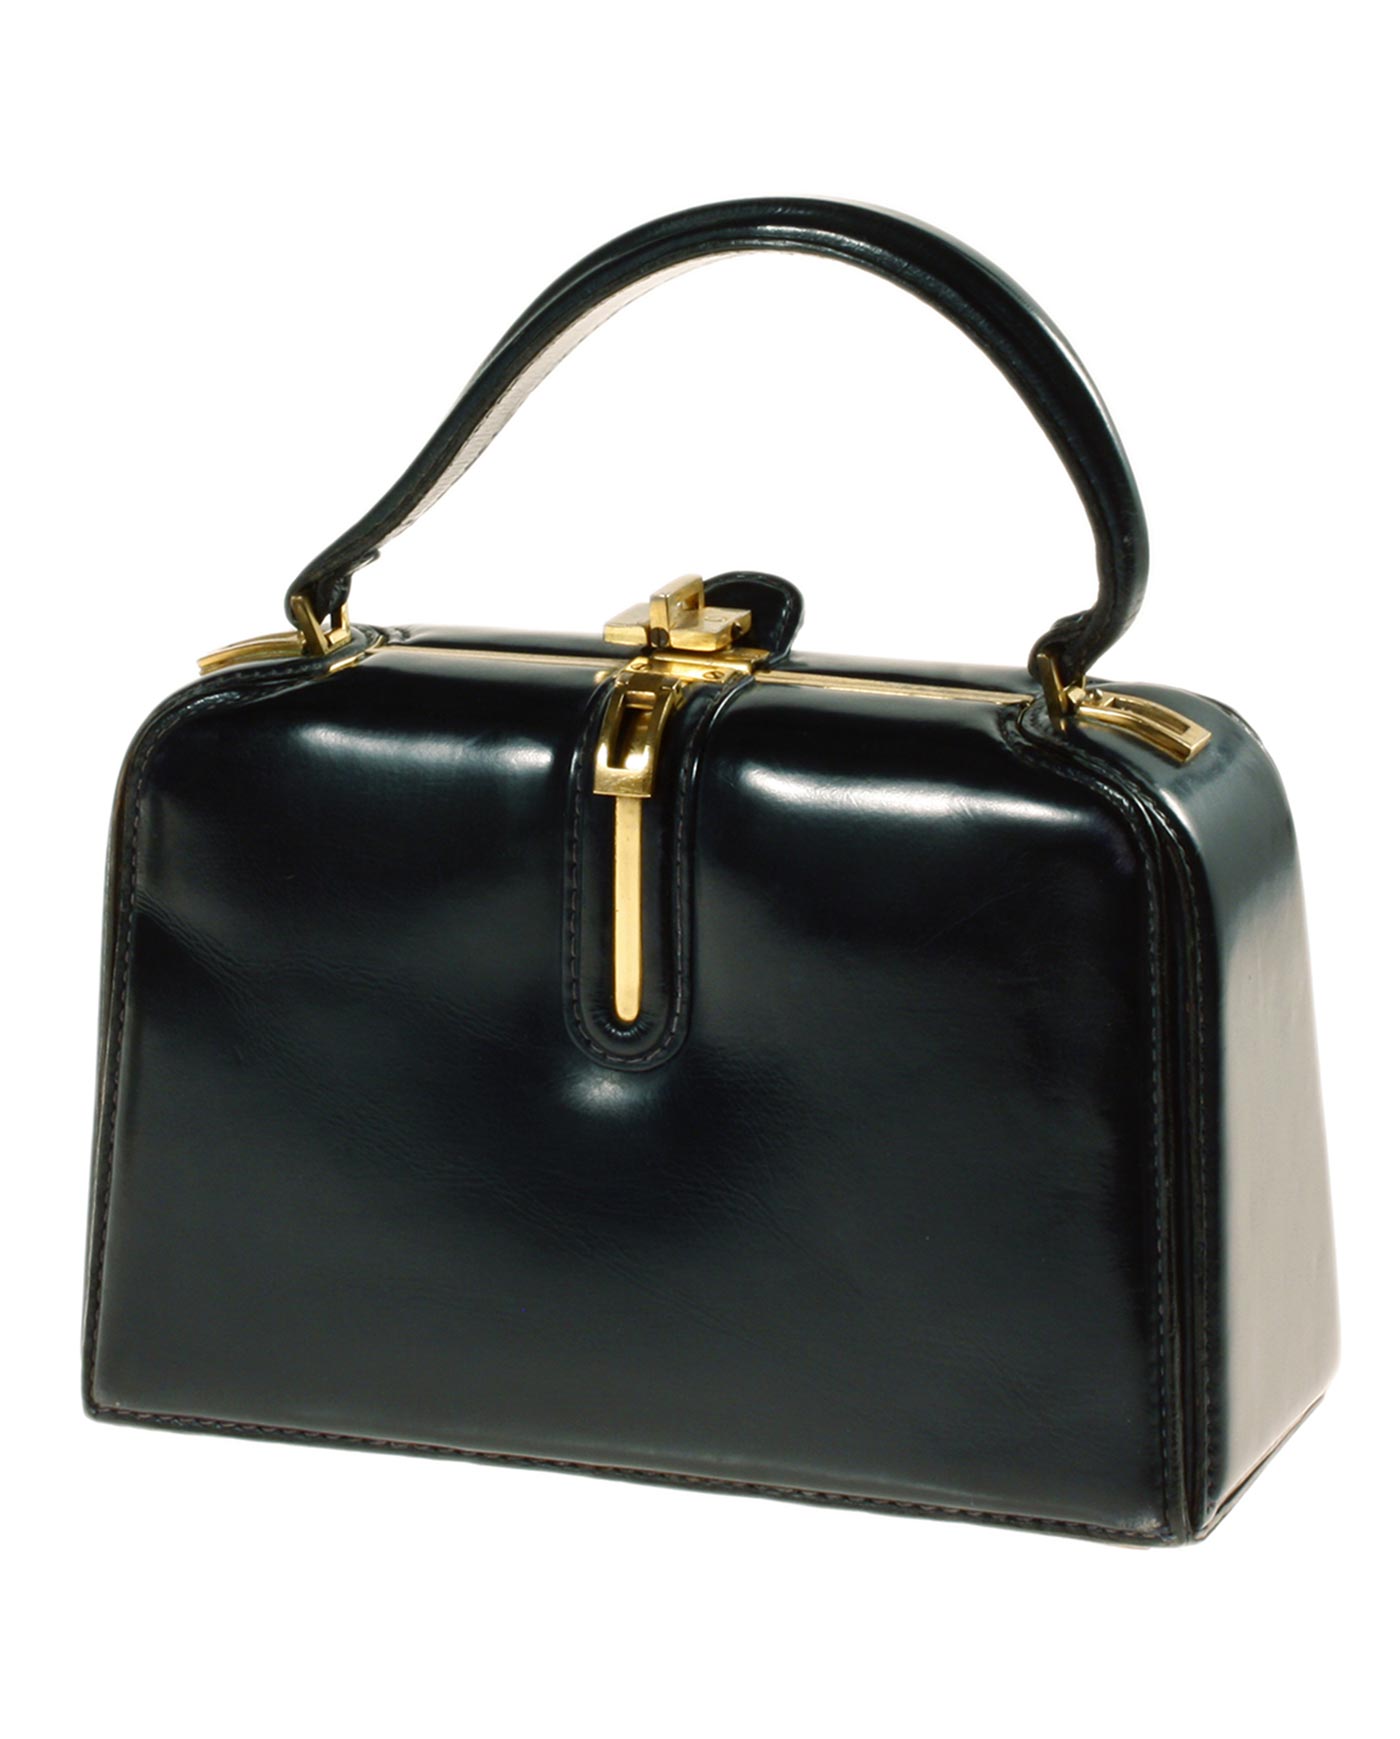 1960s Fernande Desgranges Handbag made in France